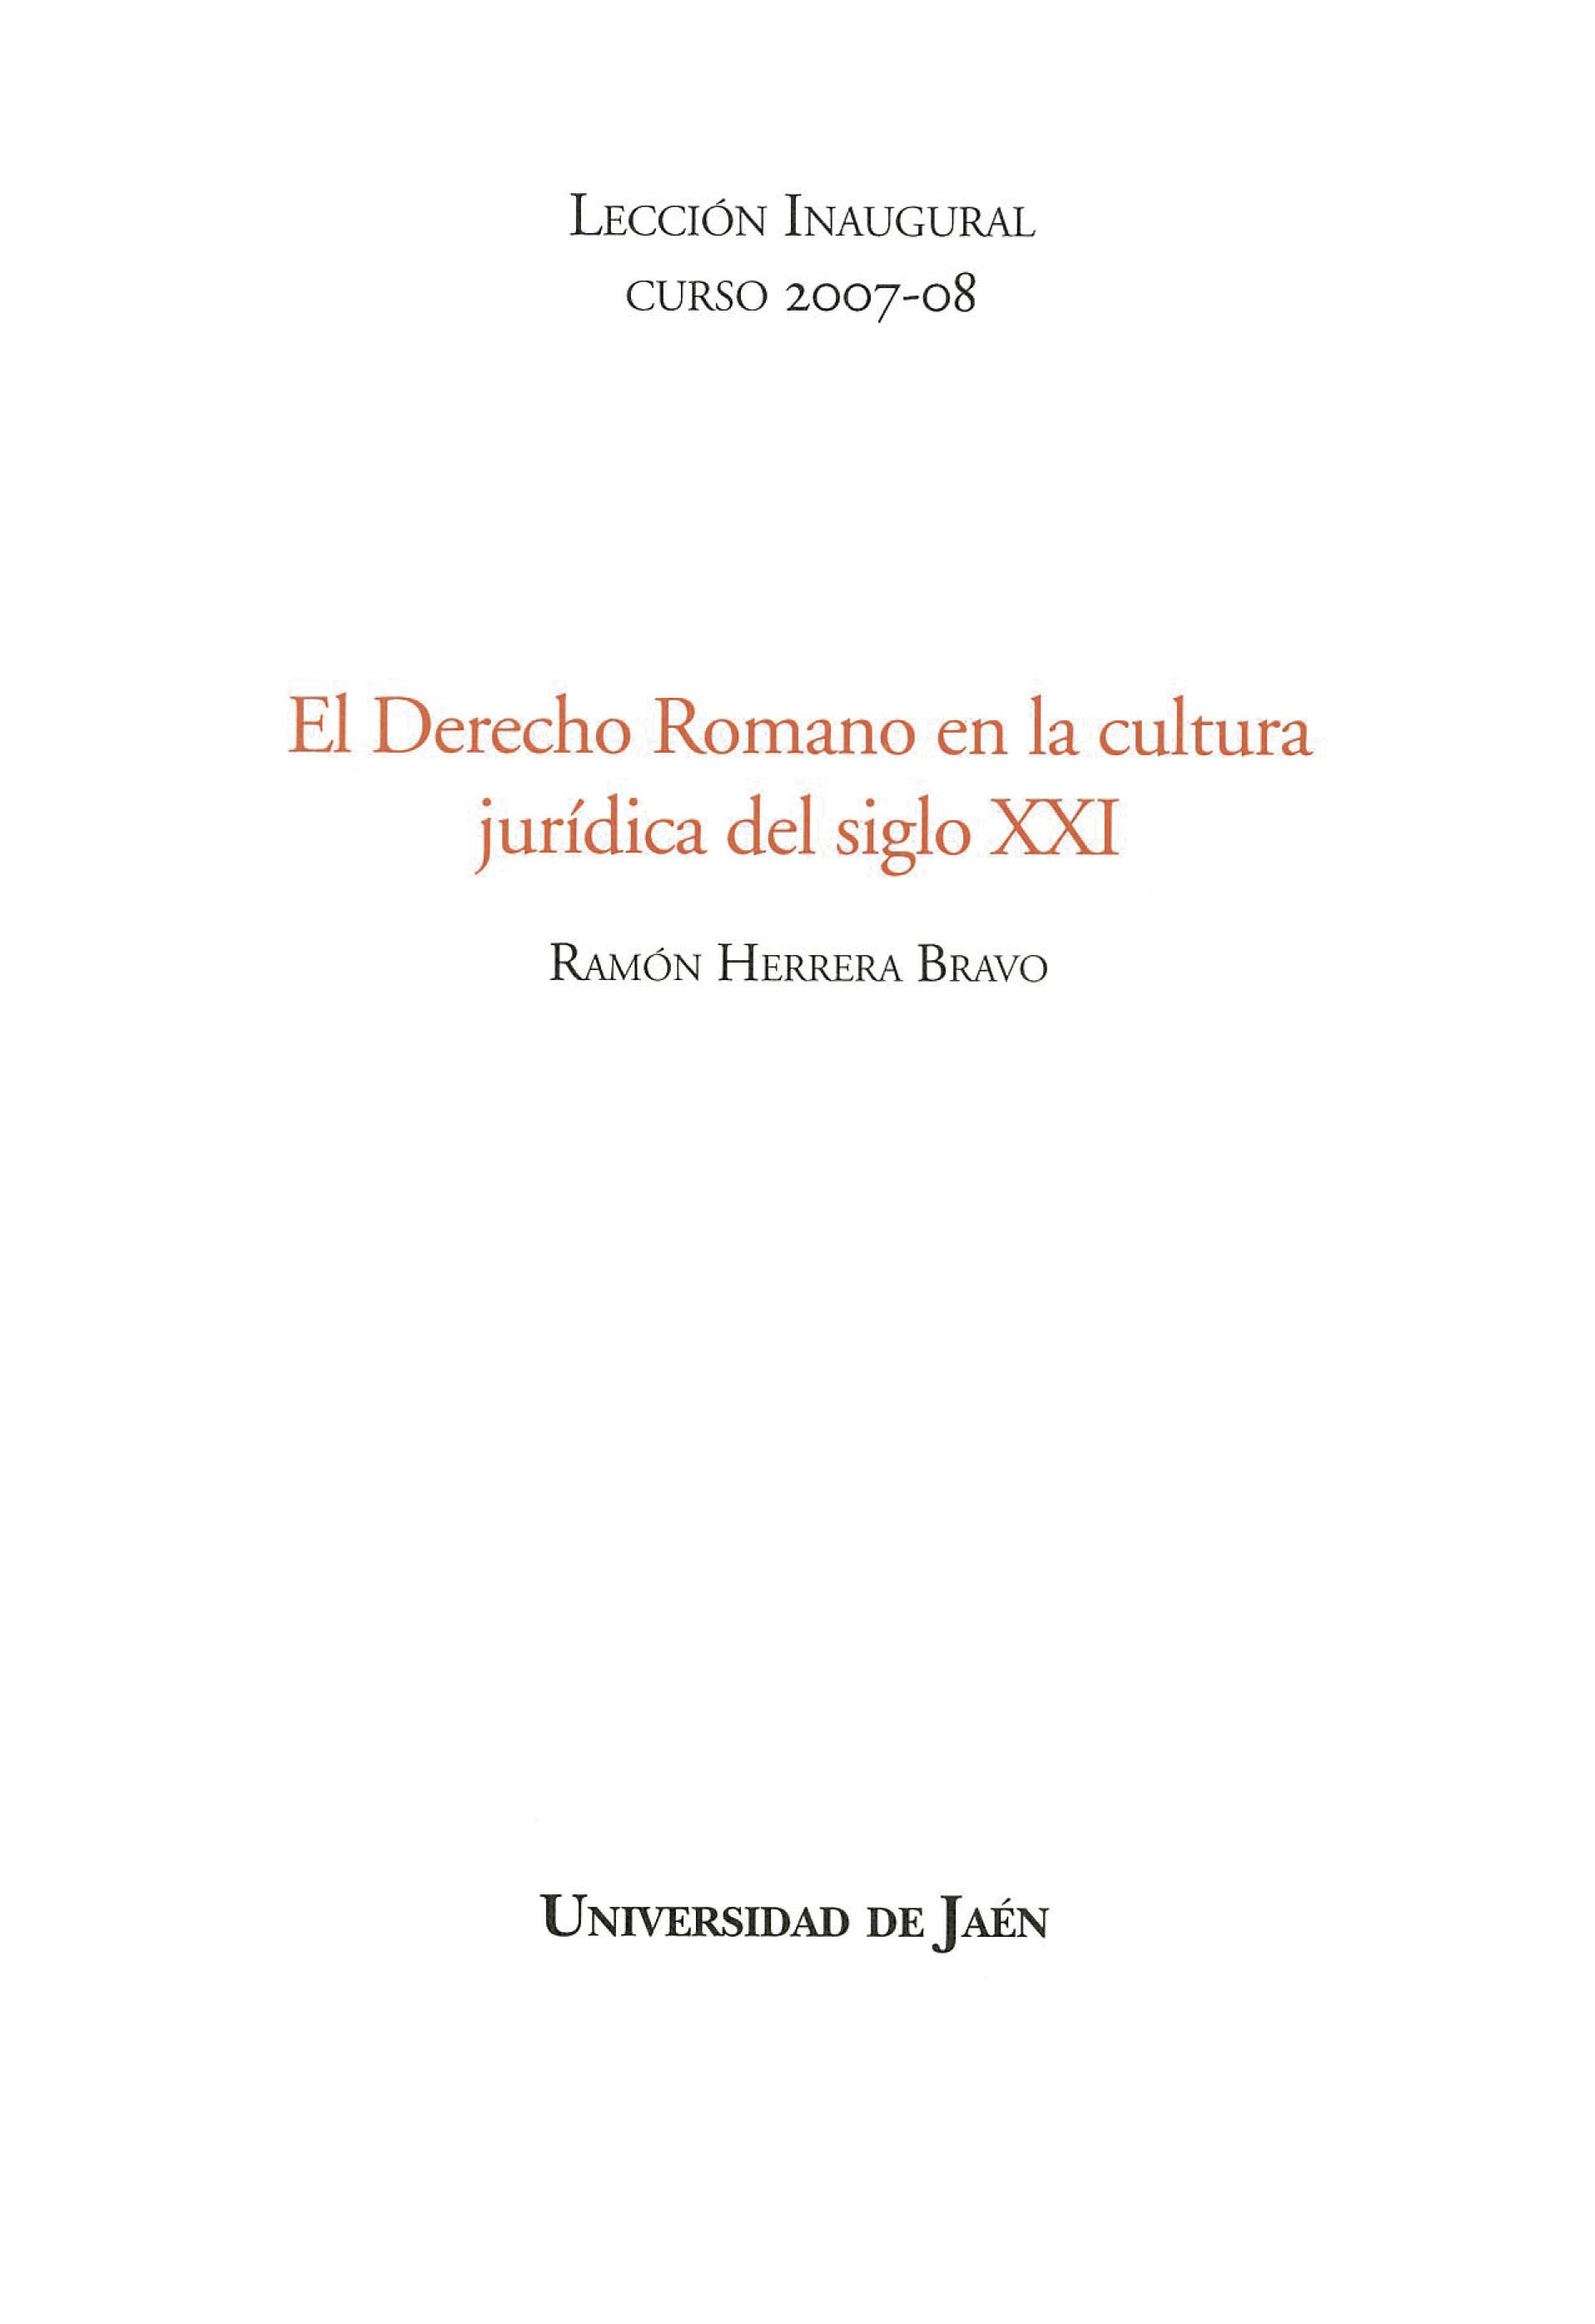 Imagen de portada del libro El derecho romano en la cultura jurídica del siglo XXI